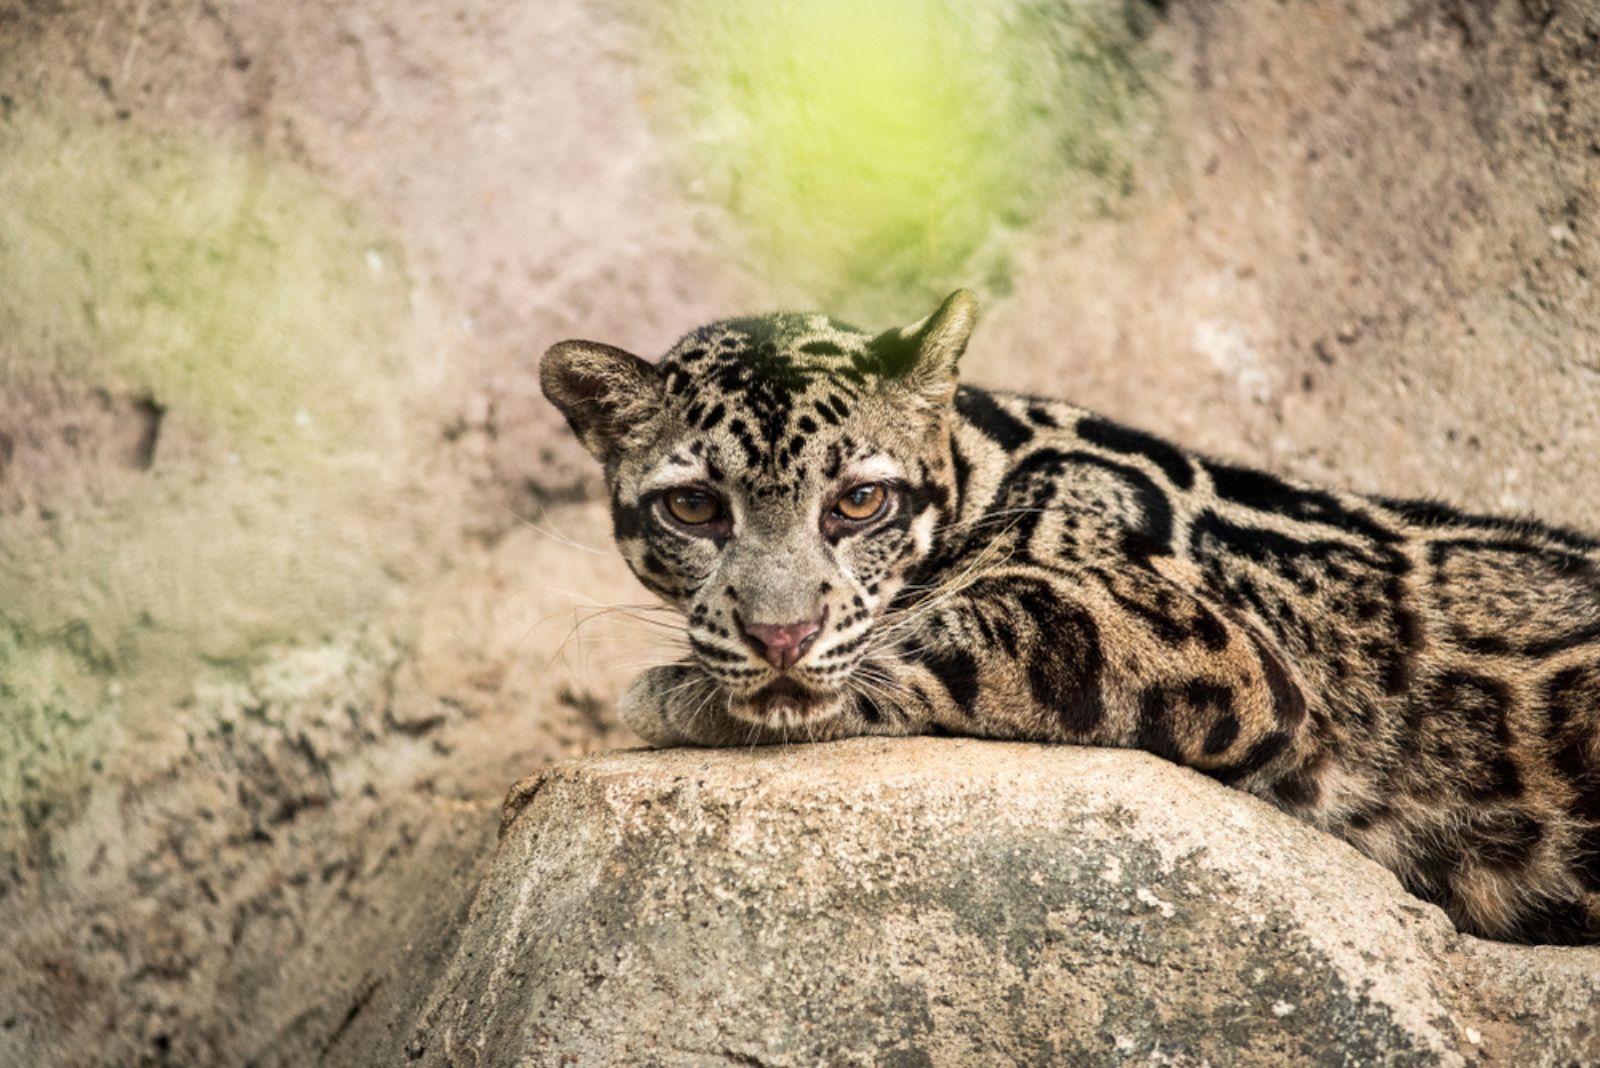 Sunda Clouded Leopard ligt op een rots en kijkt naar de camera